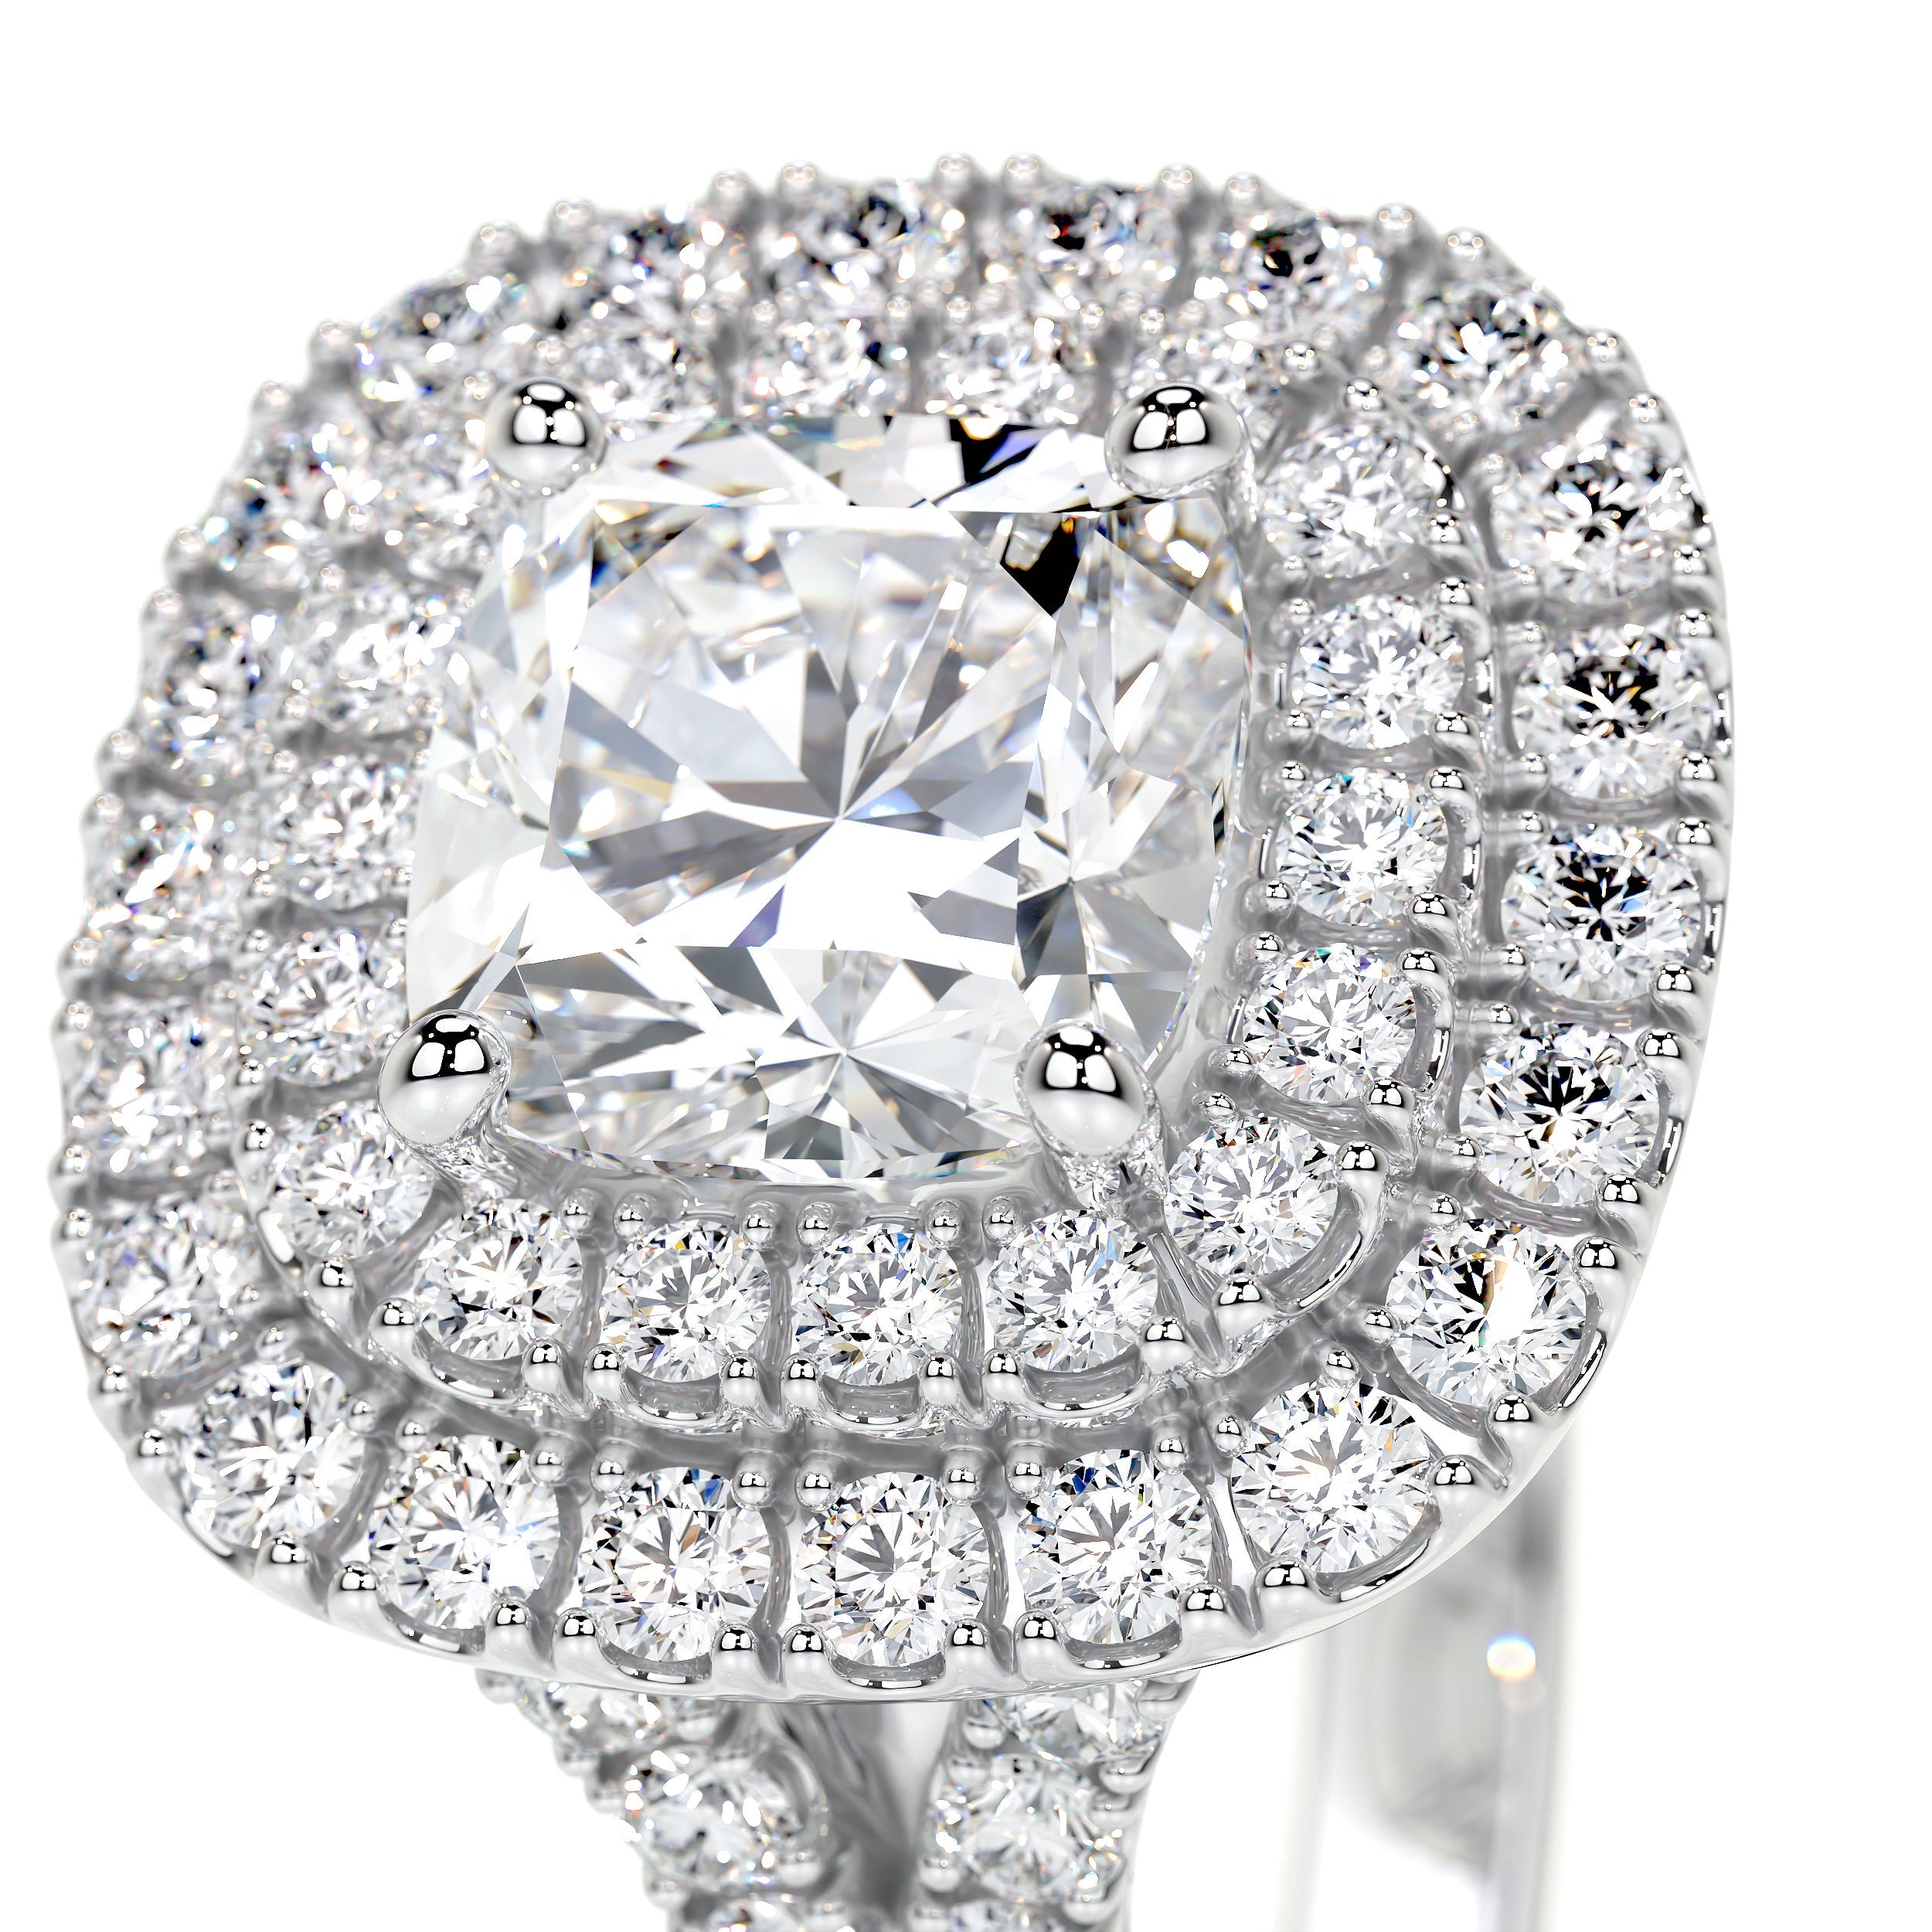 Tina Lab Grown Diamond Ring -14K White Gold